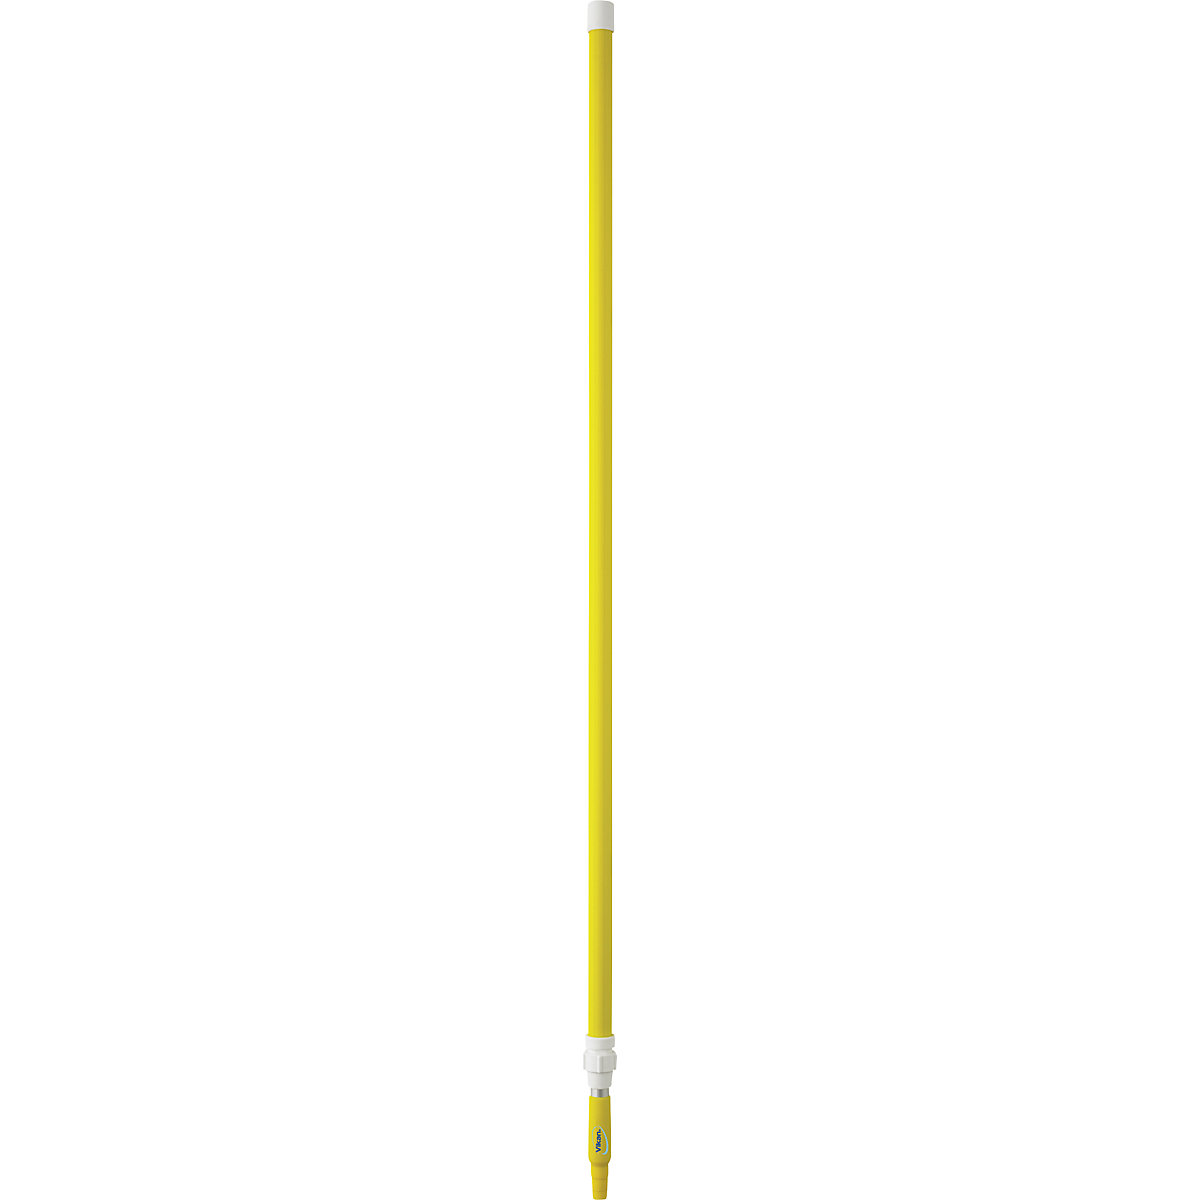 Teleskopska drška, ergonomična – Vikan, Ø 32 mm, dužina 1575 mm – 2780 mm, pak. 5 kom., u žutoj boji